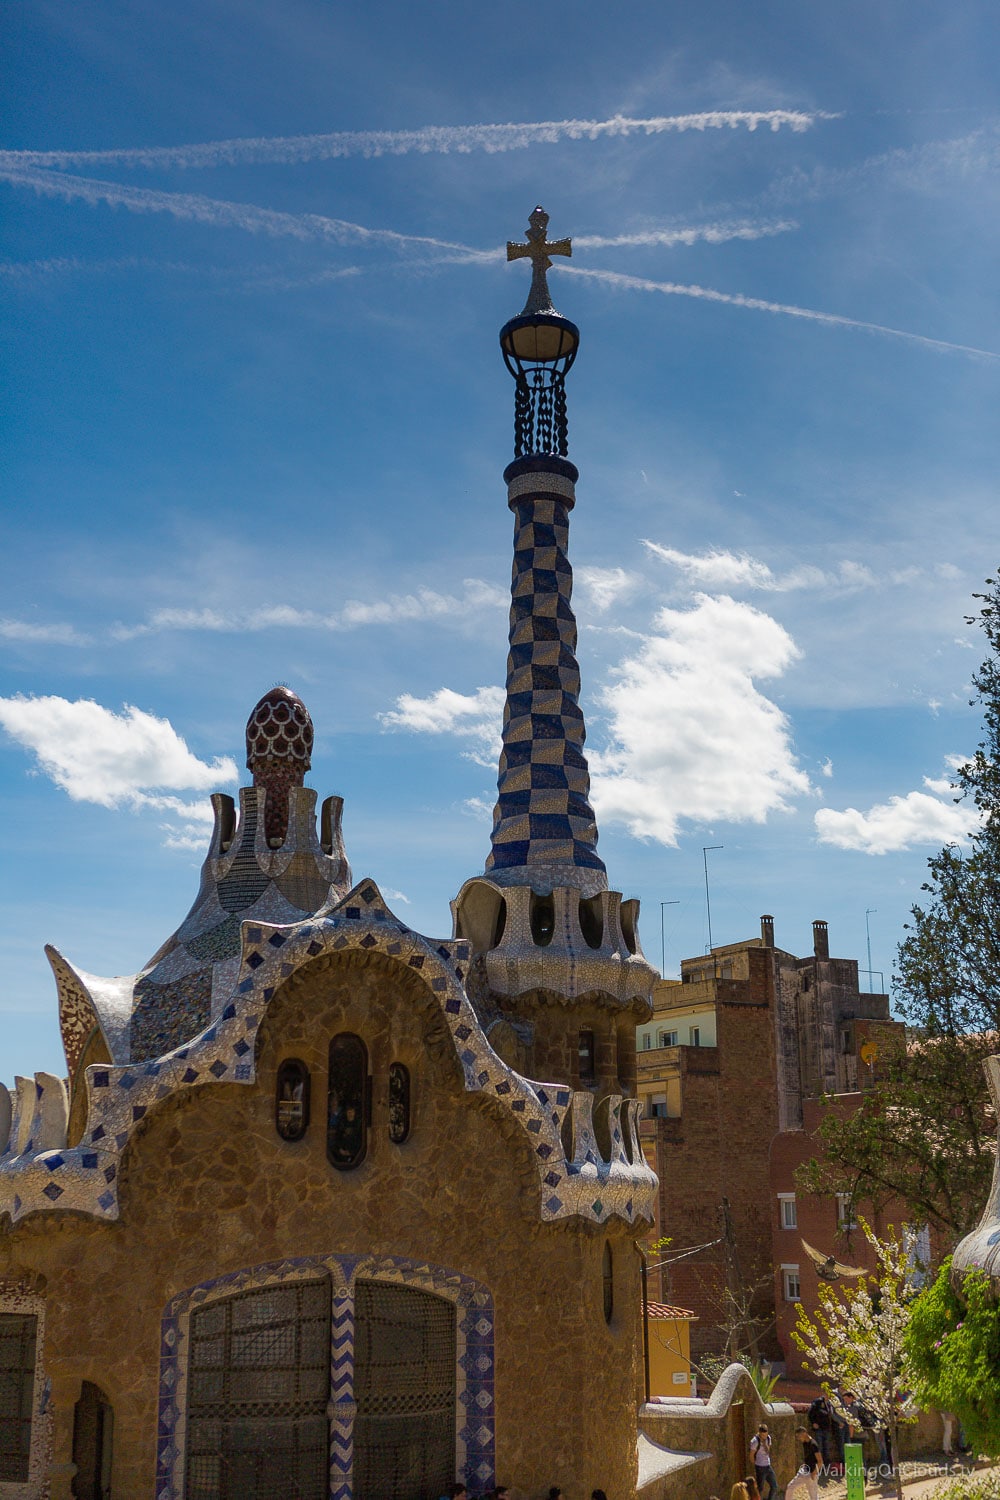 Kreuzfahrtblogger in Barcelona - Ausflüge im Angebot der TUI Cruises Mein Schiff5 - Erlebnis als Best-Ager-Reiseblogger in Spanien - Sagrada Familia - Park Gaudi , Aussicht Barcelona - Sehenswürdigkeiten Barcelona